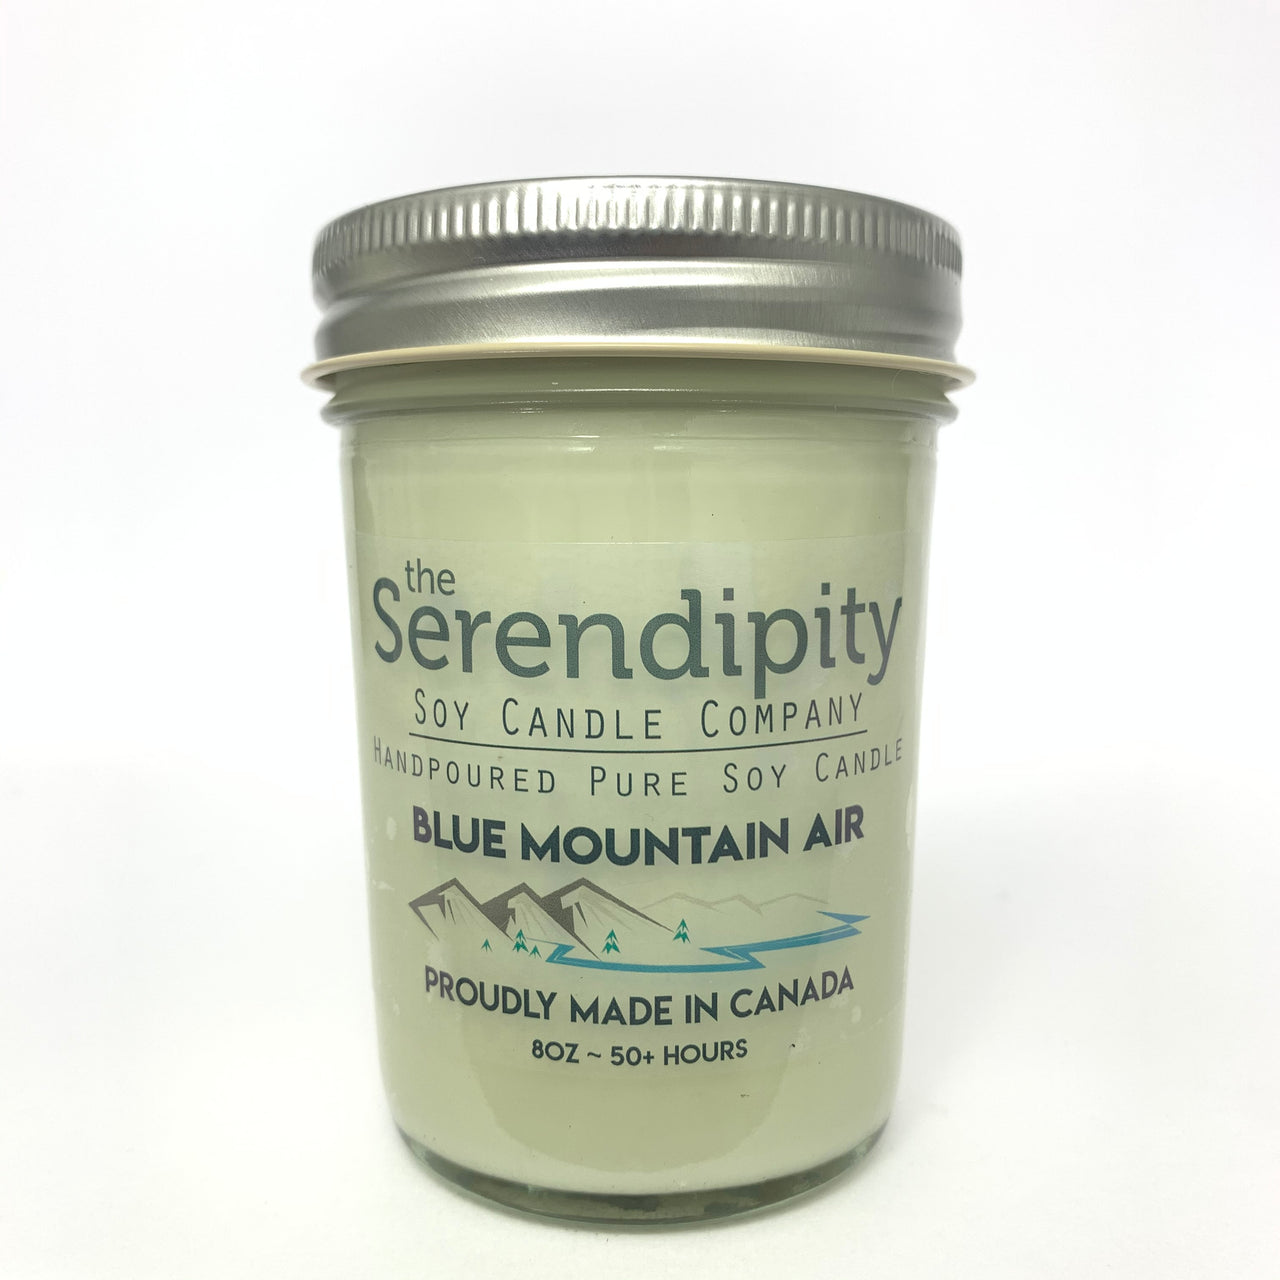 Blue Mountain Air